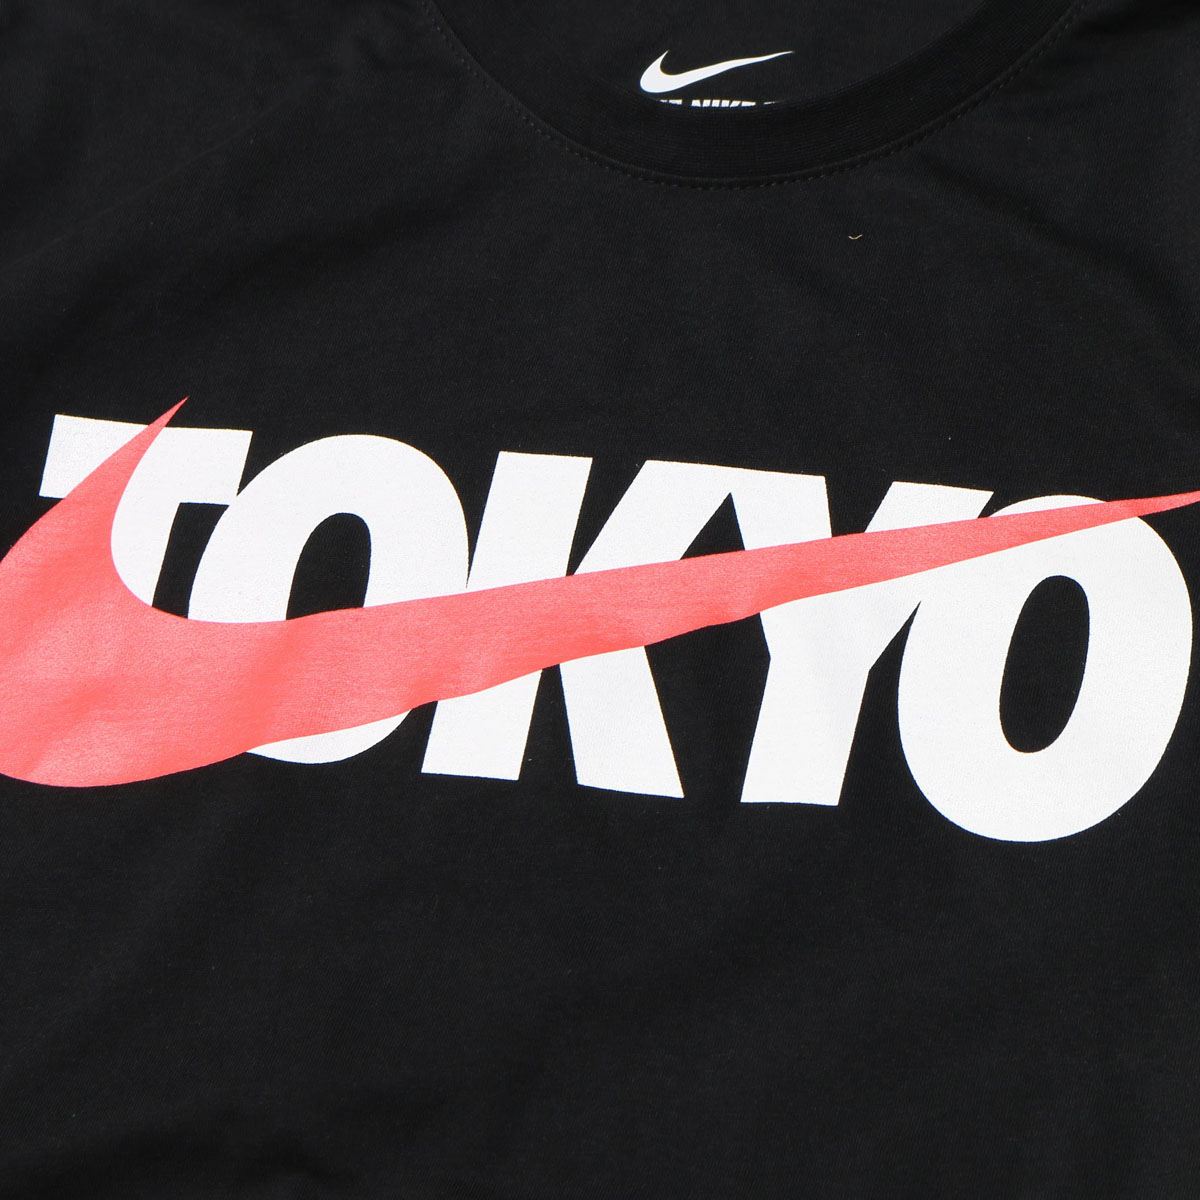 楽天市場 Nike Tokyo Swoosh Print Tee ナイキ トウキョウ スウッシュ プリント ティ Black メンズ Tシャツ 17fa S Atmos Tokyo